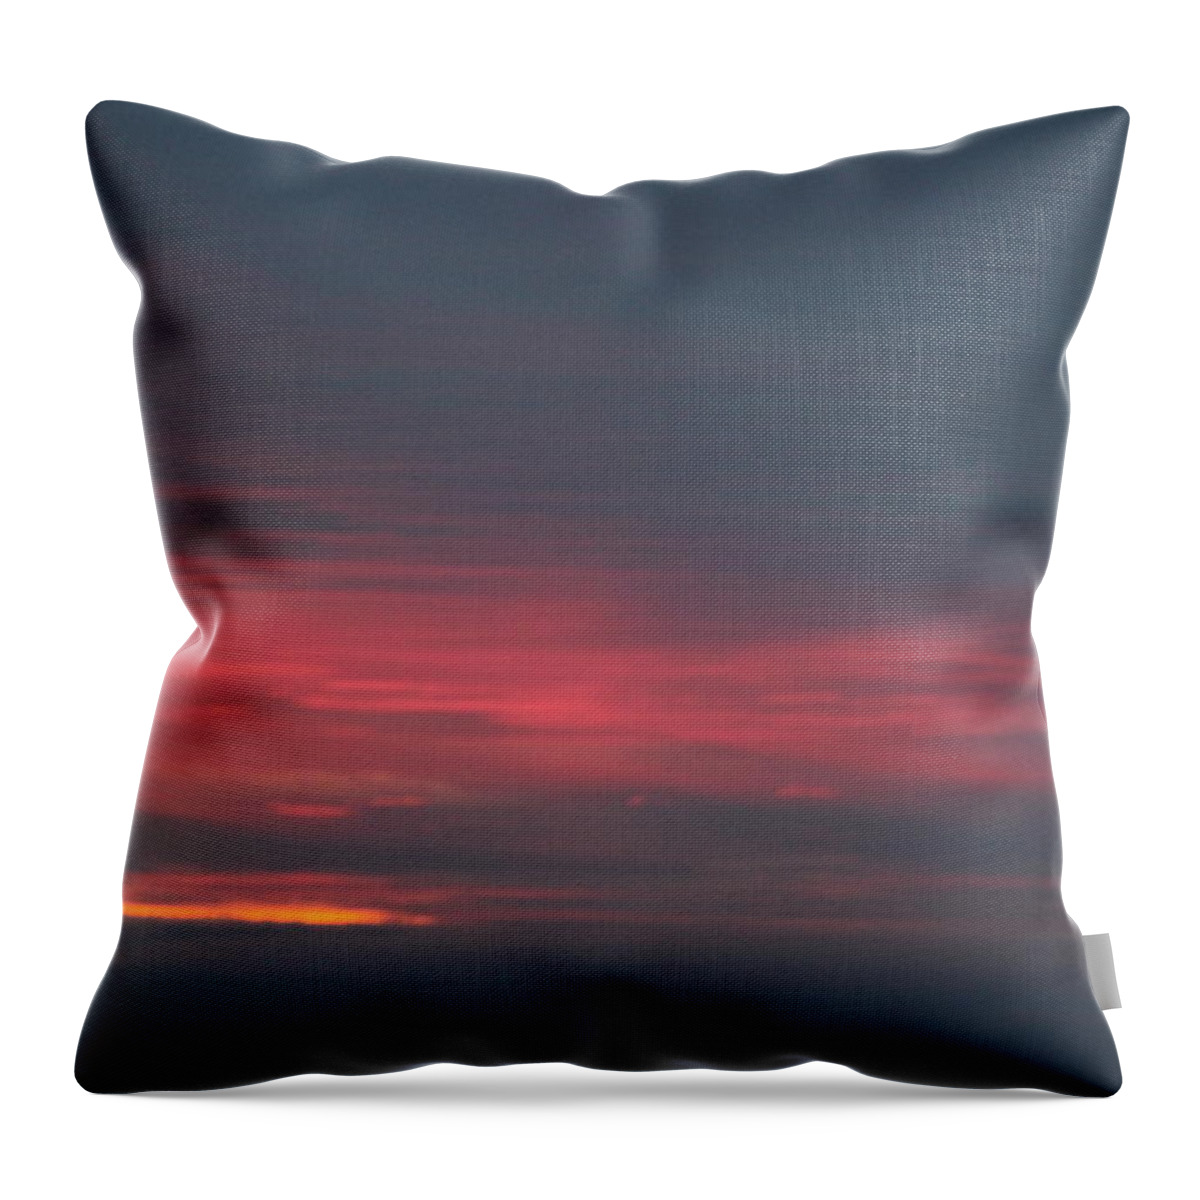  Throw Pillow featuring the photograph Alaska Sunset by Susan Saddler